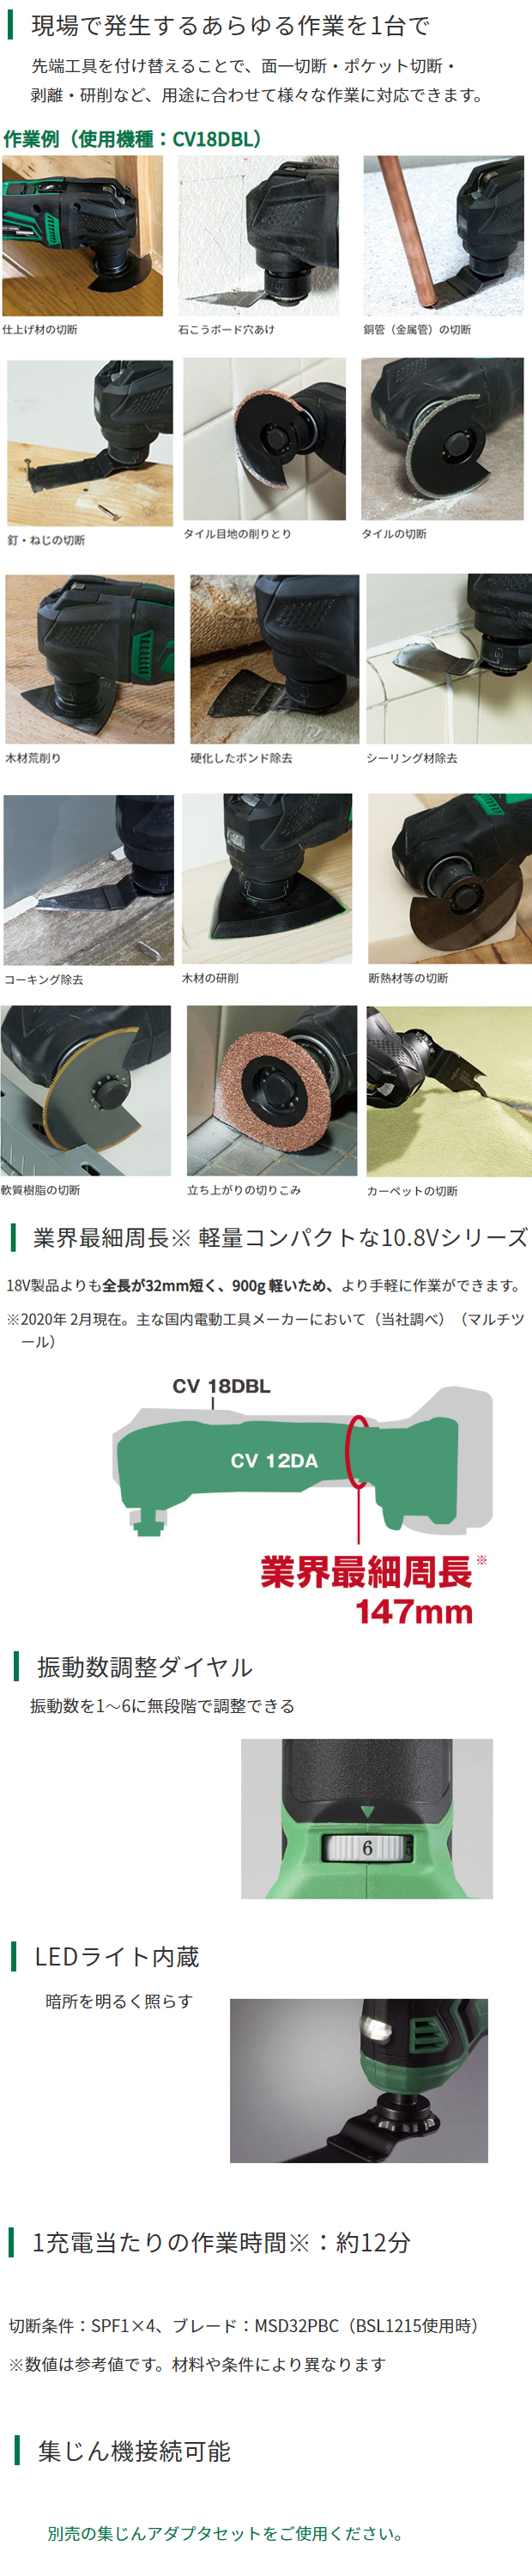 Hikoki 10.8Vコードレスマルチツール CV12DA